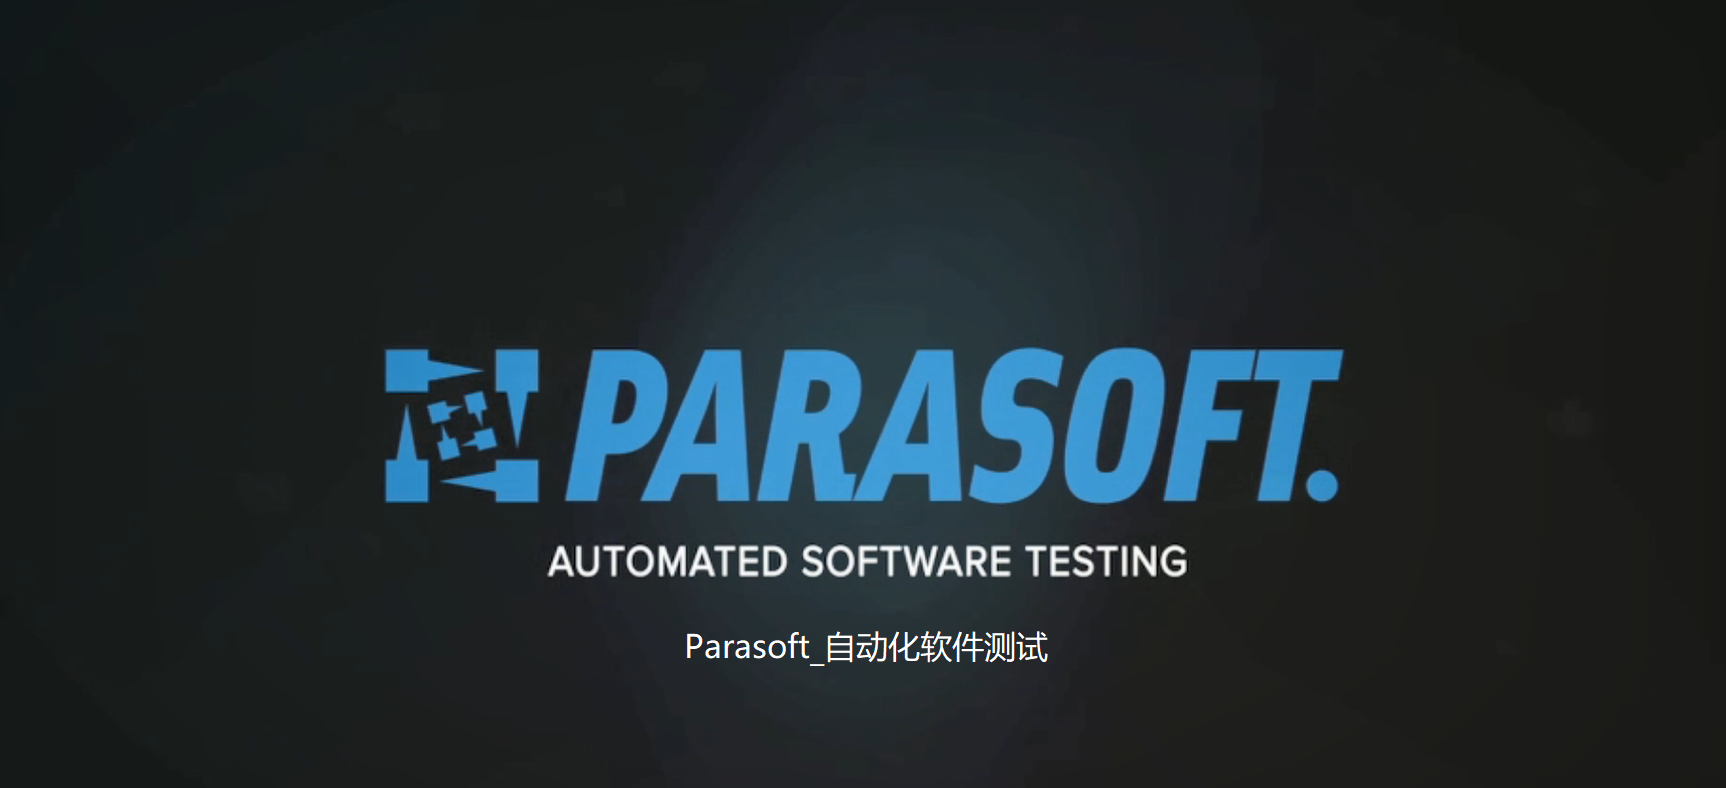 Parasoft_自动化软件测试